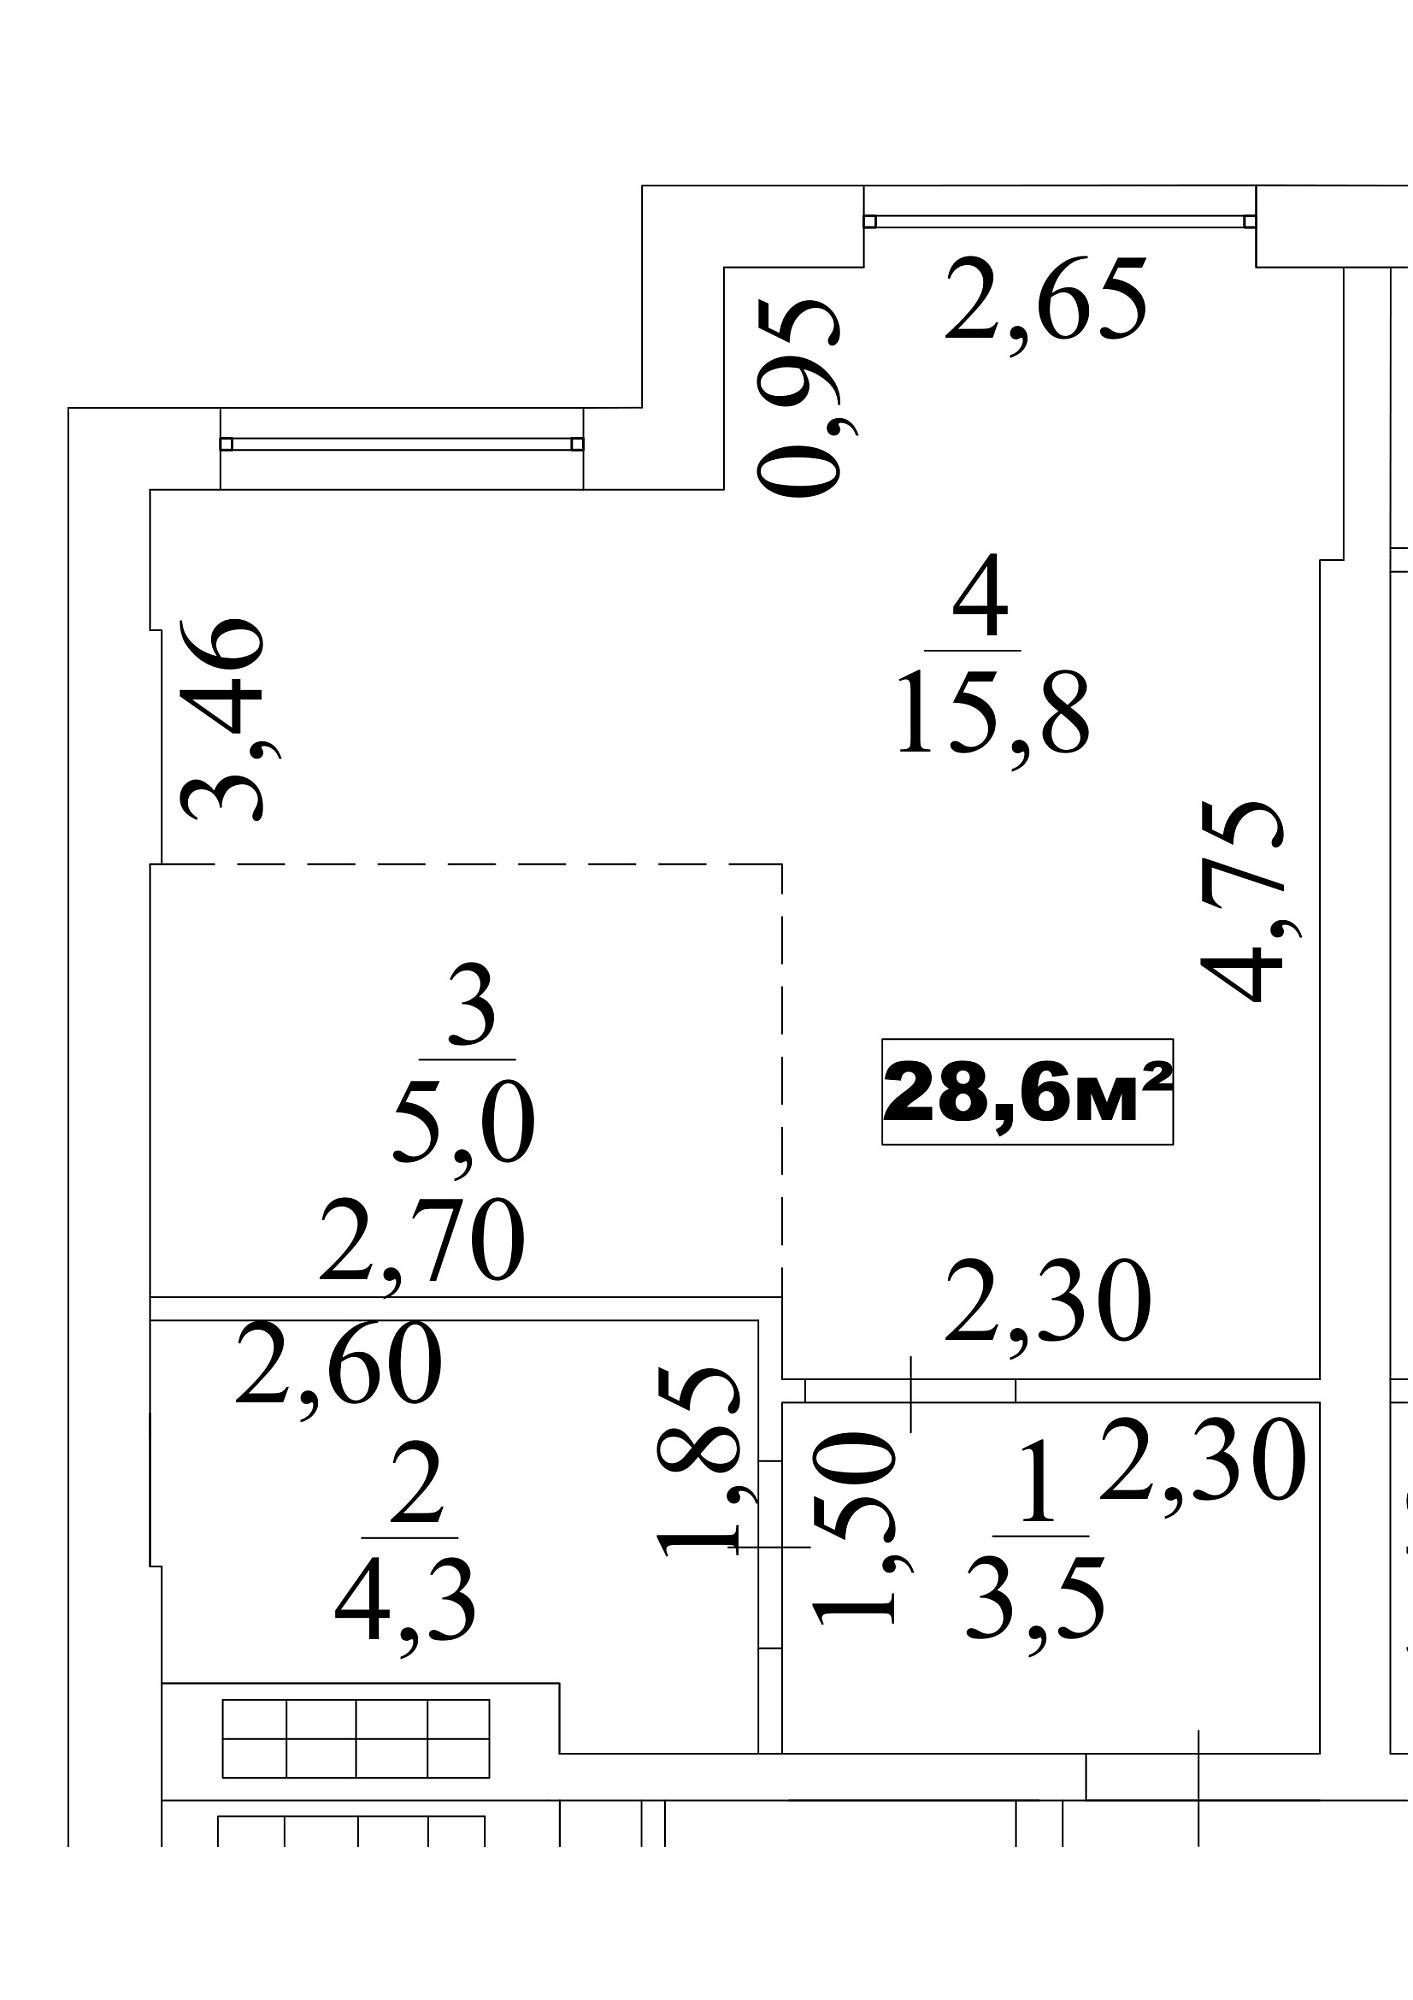 Планування Smart-квартира площею 28.6м2, AB-10-01/0003б.